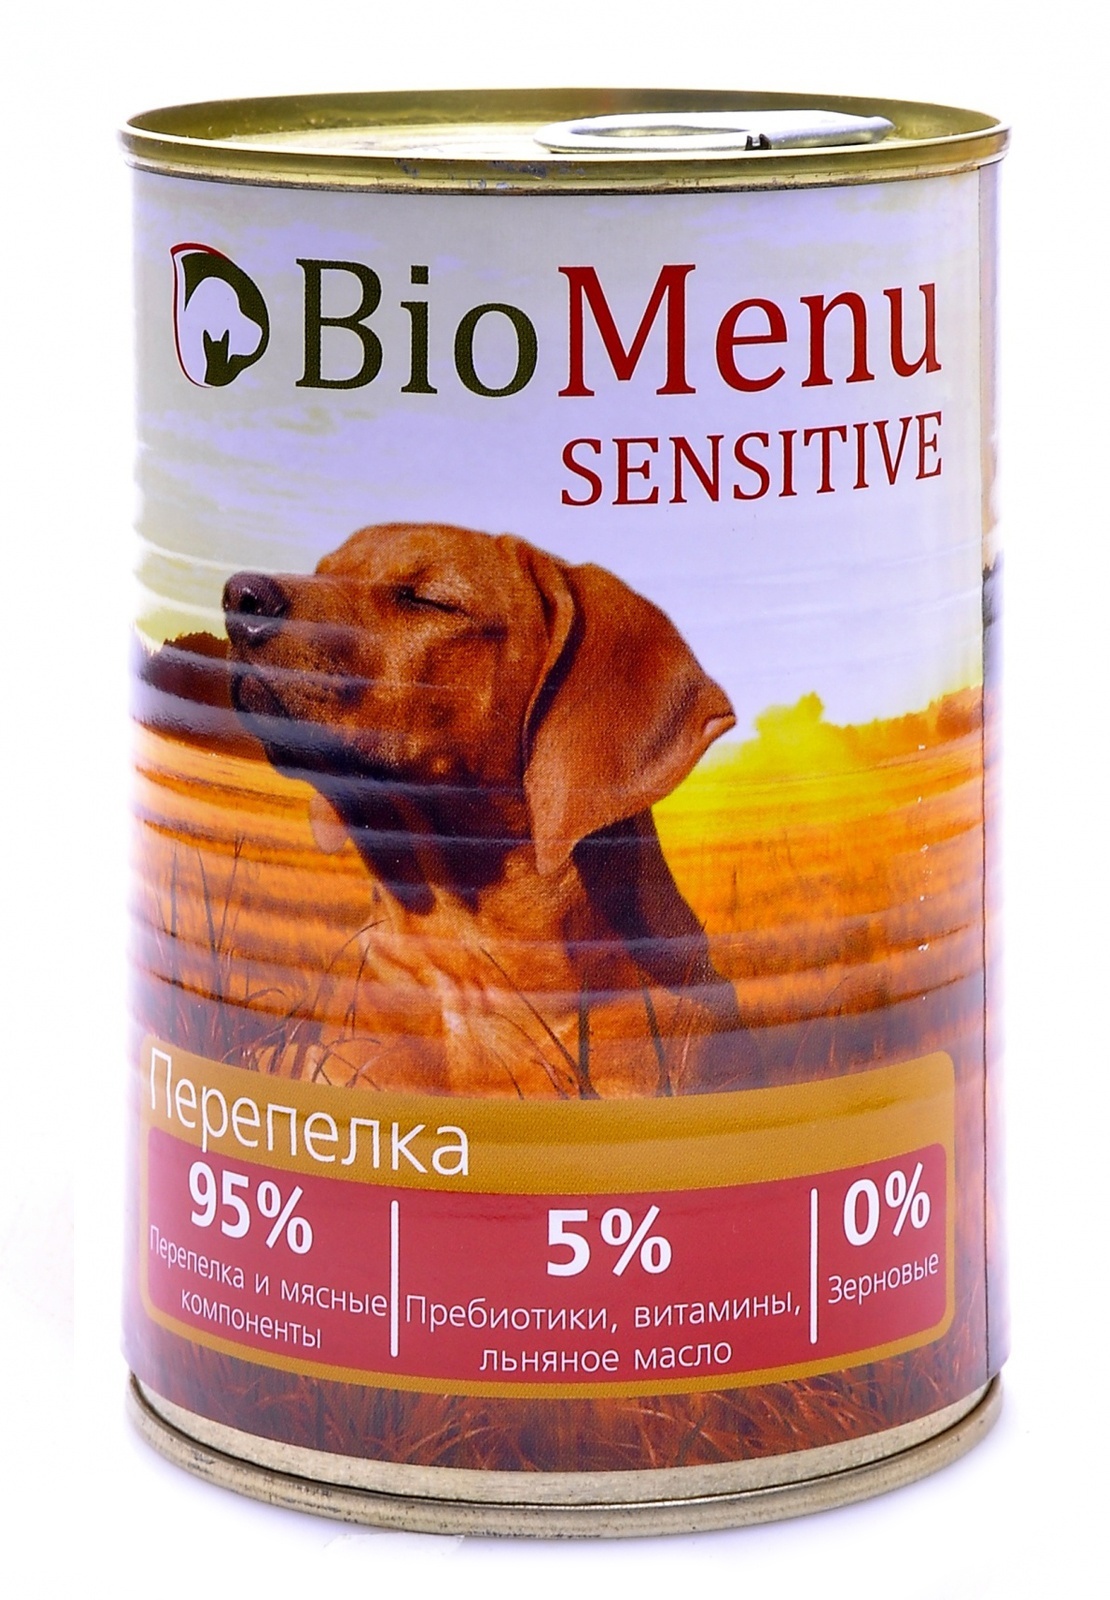 BioMenu BioMenu гипоаллергенные консервы для собак перепелка (410 г) biomenu biomenu консервы для собак цыпленок с ананасом 410 г